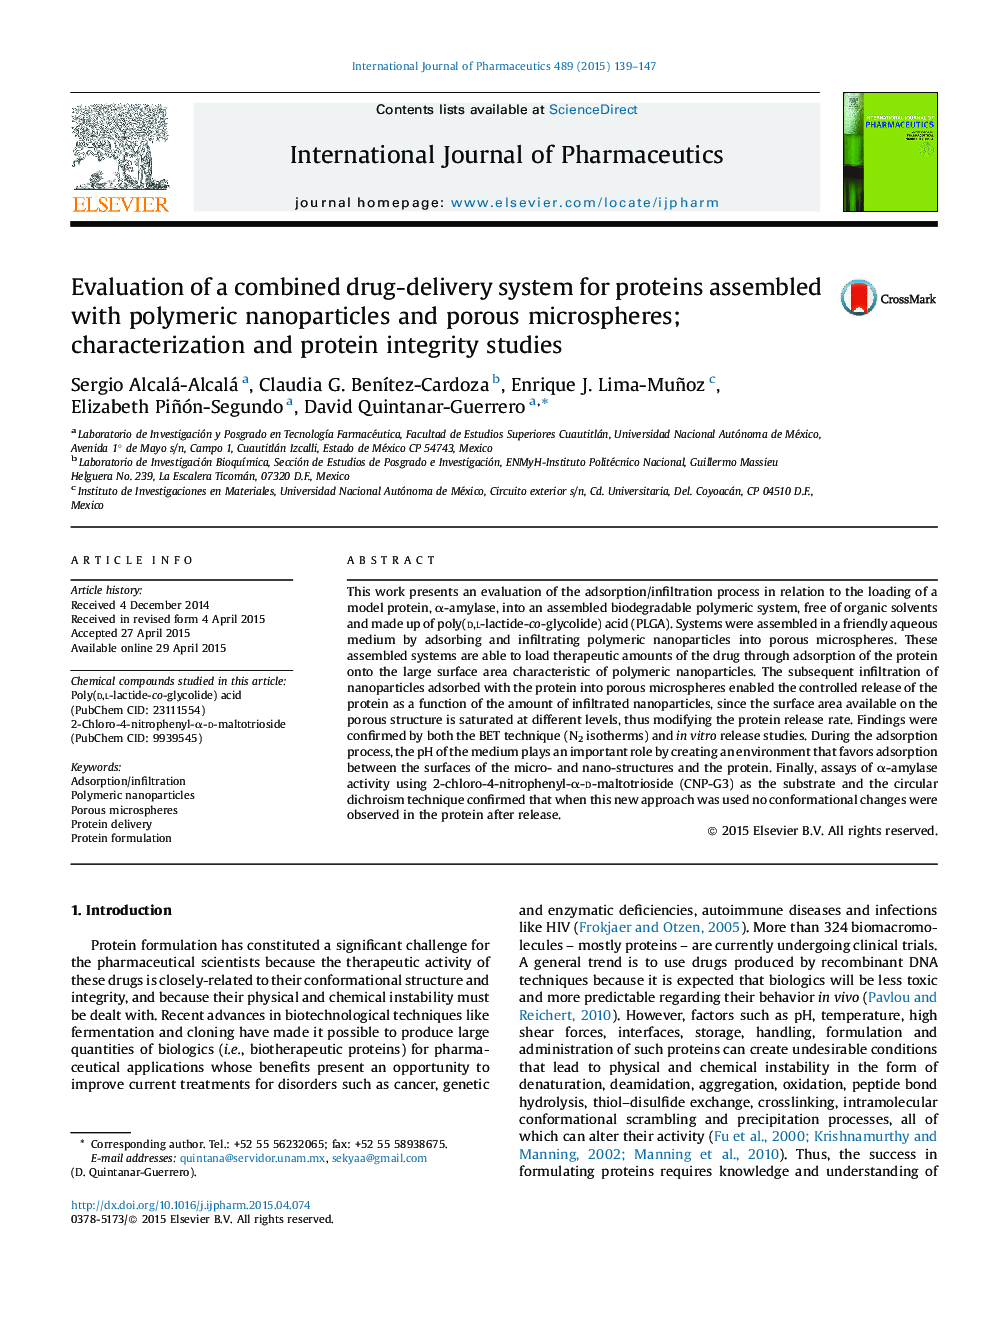 ارزیابی سیستم ترکیبی دارویی برای پروتئین های مونتاژ شده با نانوذرات پلیمری و میکروسپرس های متخلخل؛ توصیف و بررسی تمامیت پروتئین 